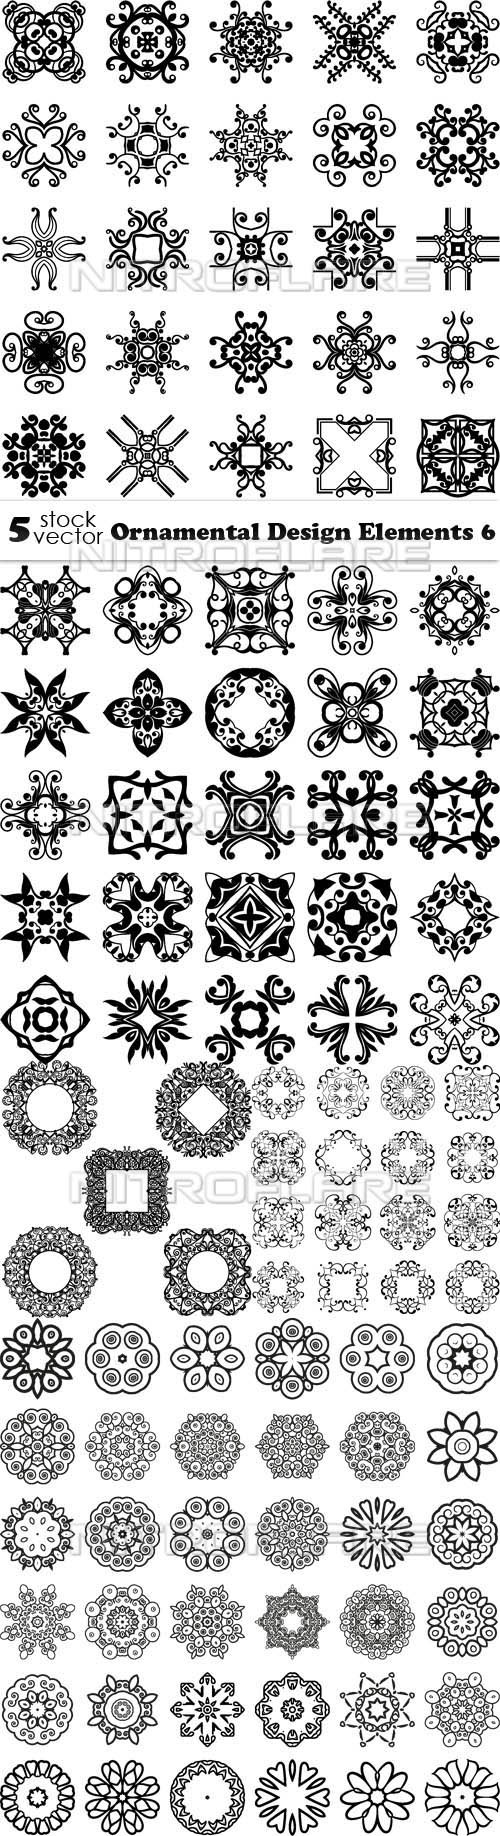 Vectors - Ornamental Design Elements 6